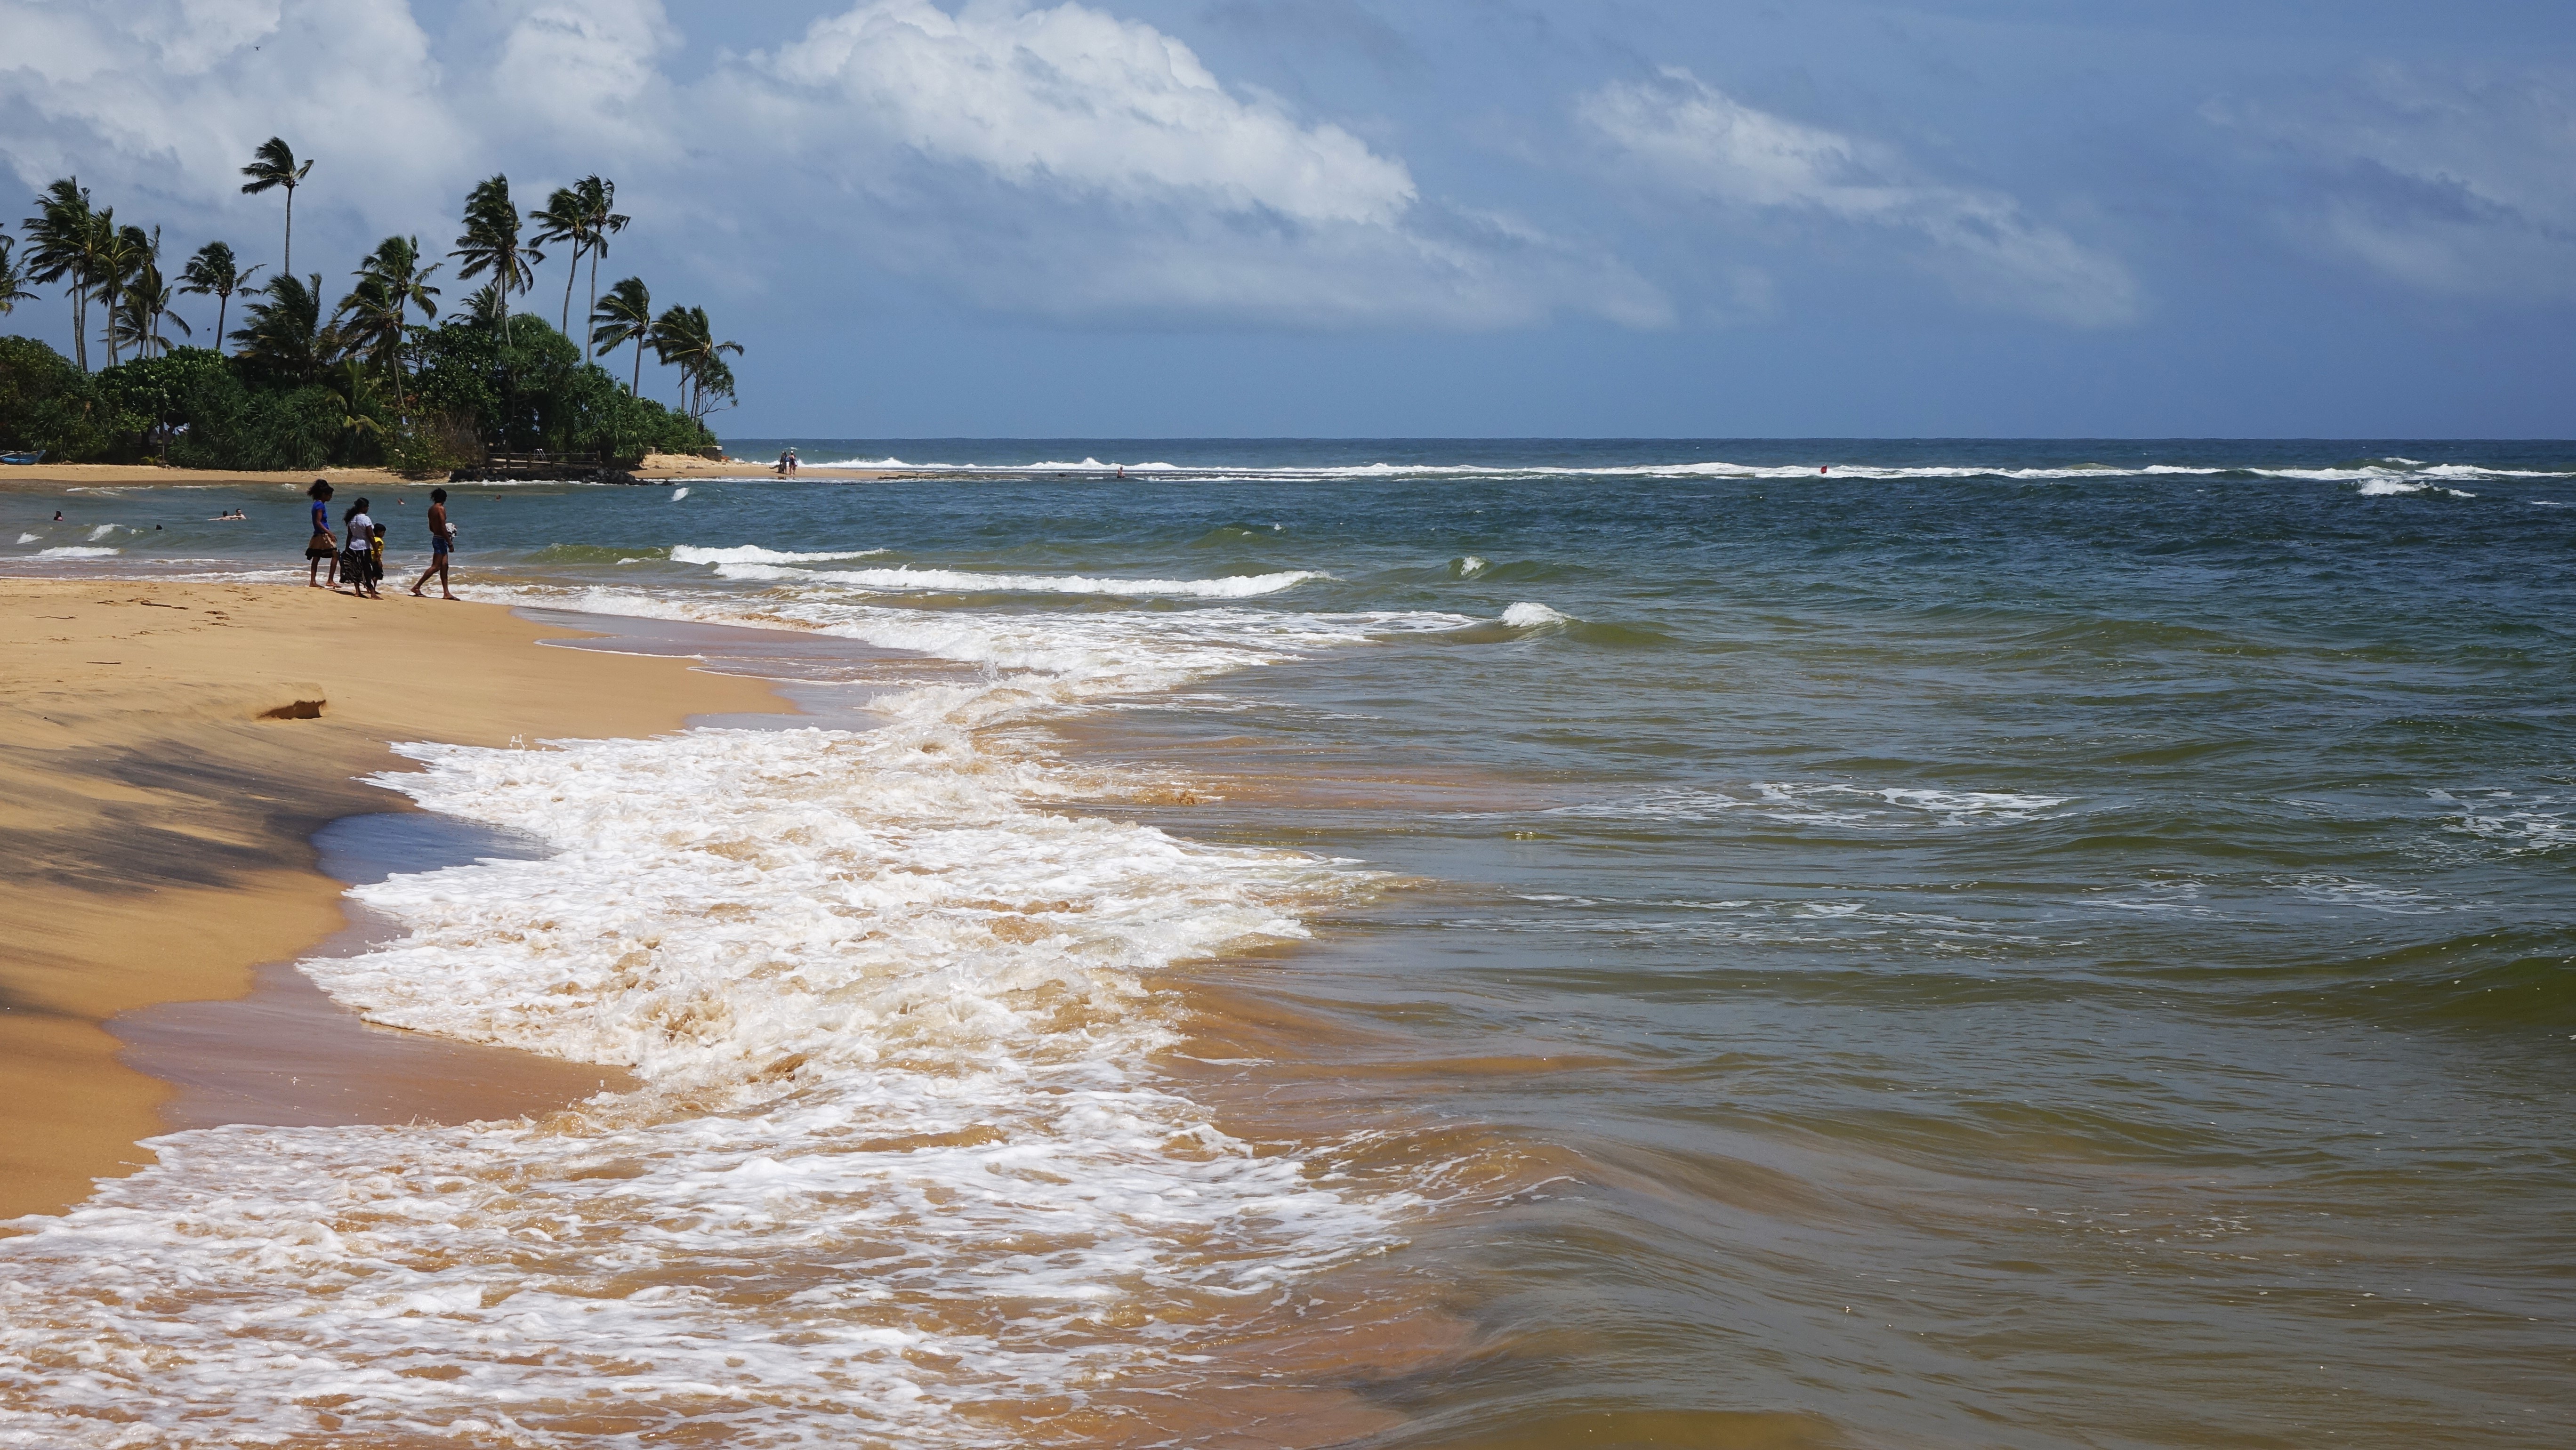 途中经过黑卡杜瓦，黑卡杜瓦是斯里兰卡最受欢迎的旅游地之一，是全球十佳观赏水下珊瑚的沙滩之一，有非常多